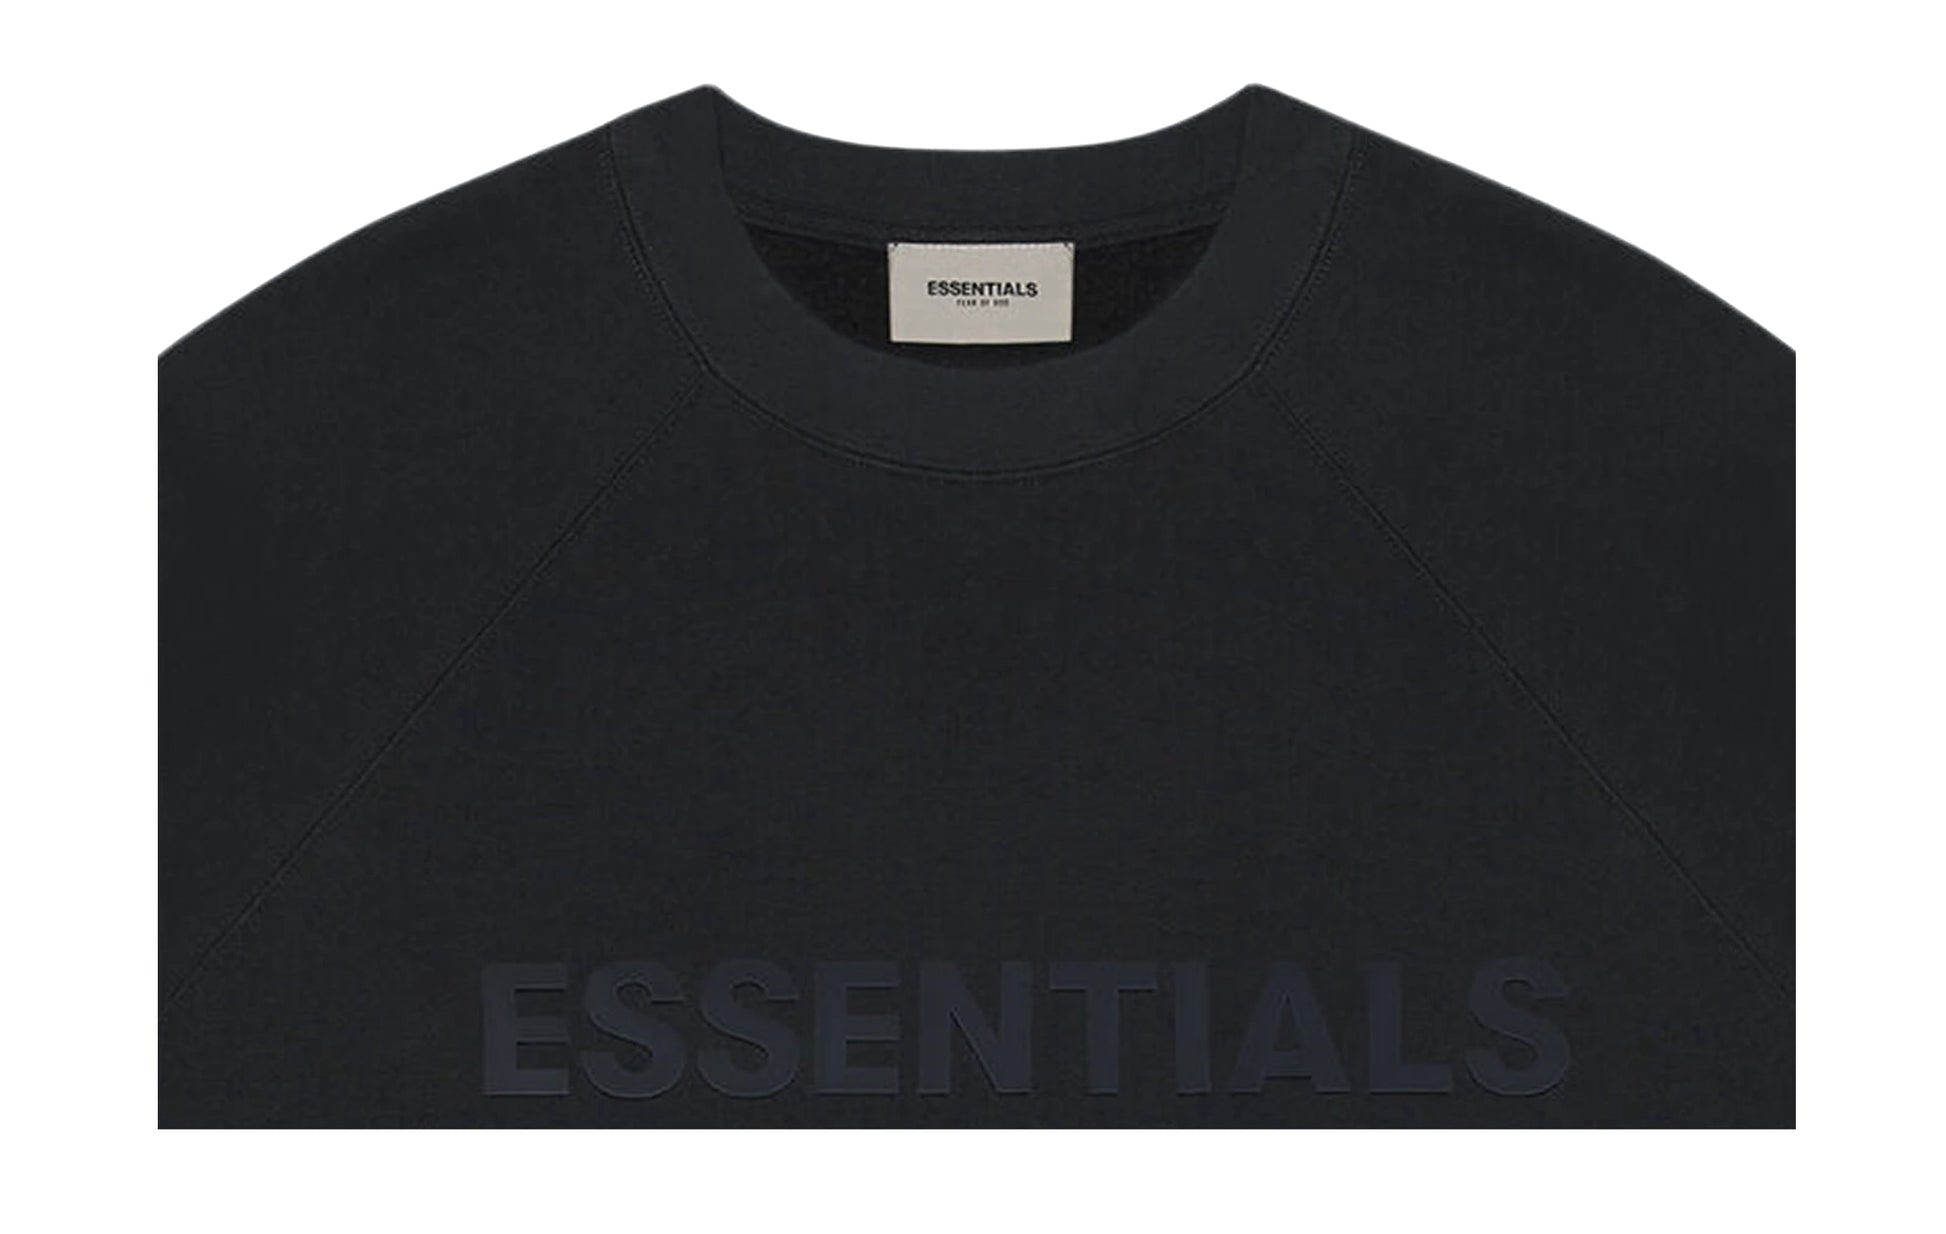 Essentials Crewneck Applique Logo SS20 Dark Slate/Stretch Limo/Black | The Sortage